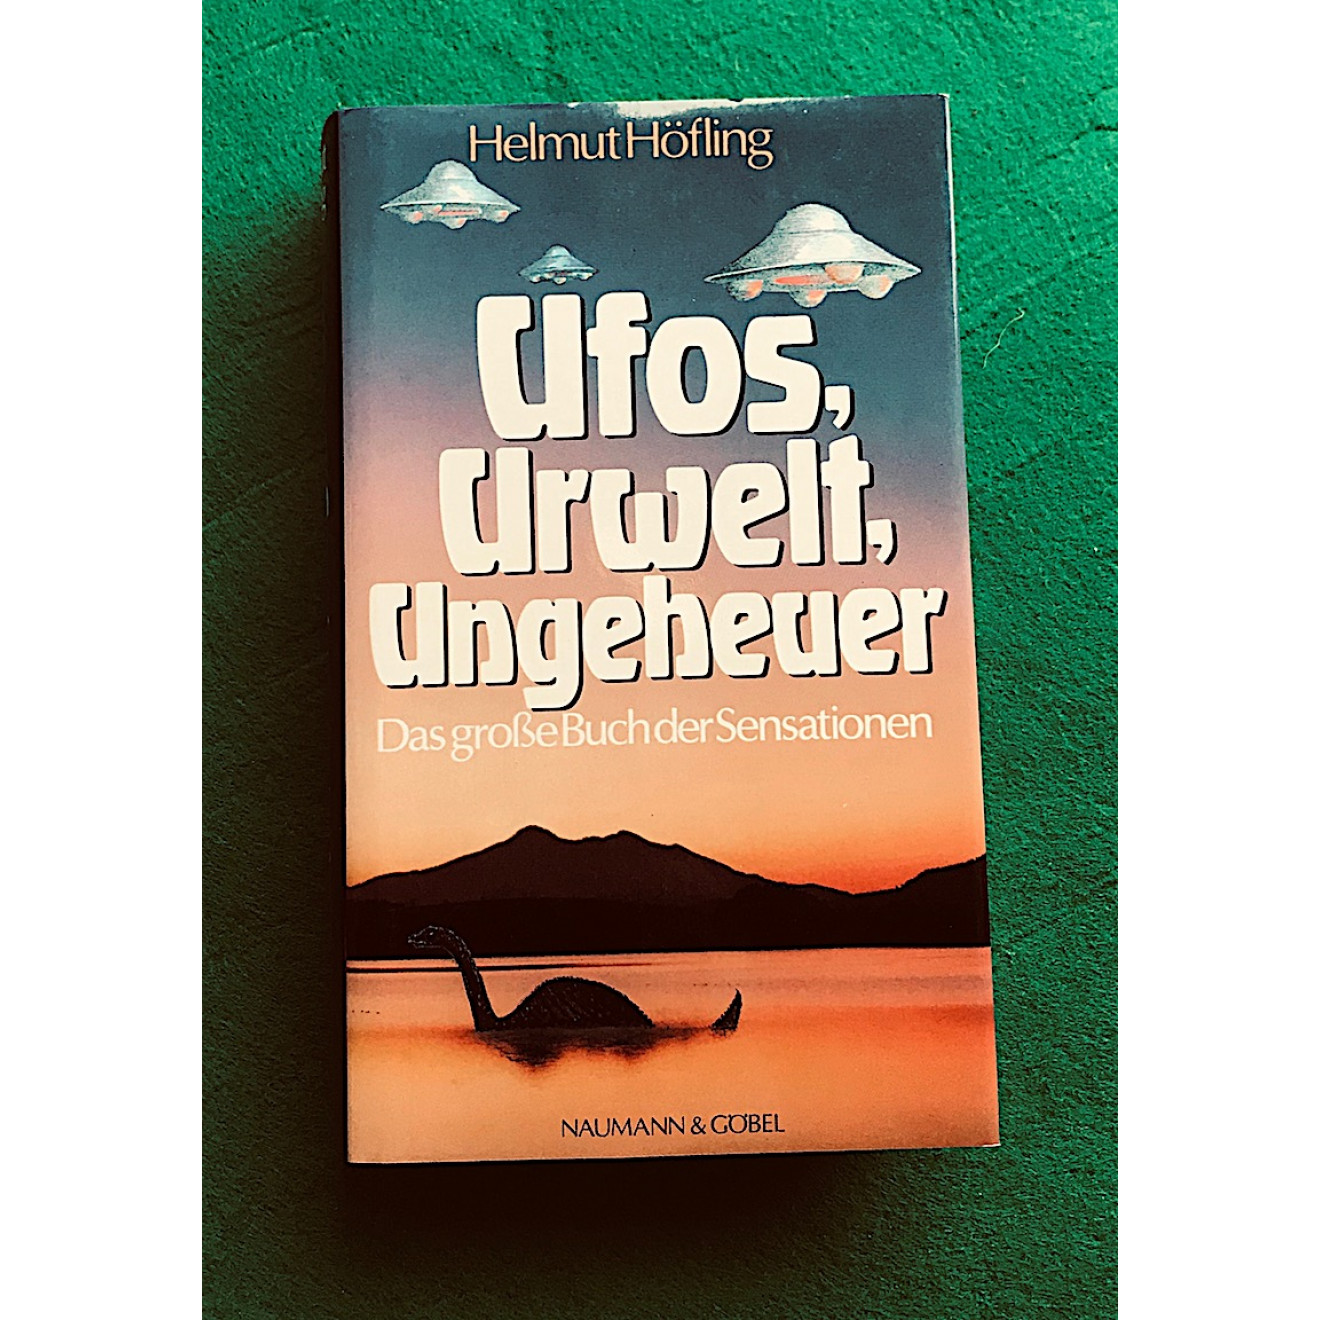 Ufos, Urwelt, Ungeheuer (Helmut Höfling)